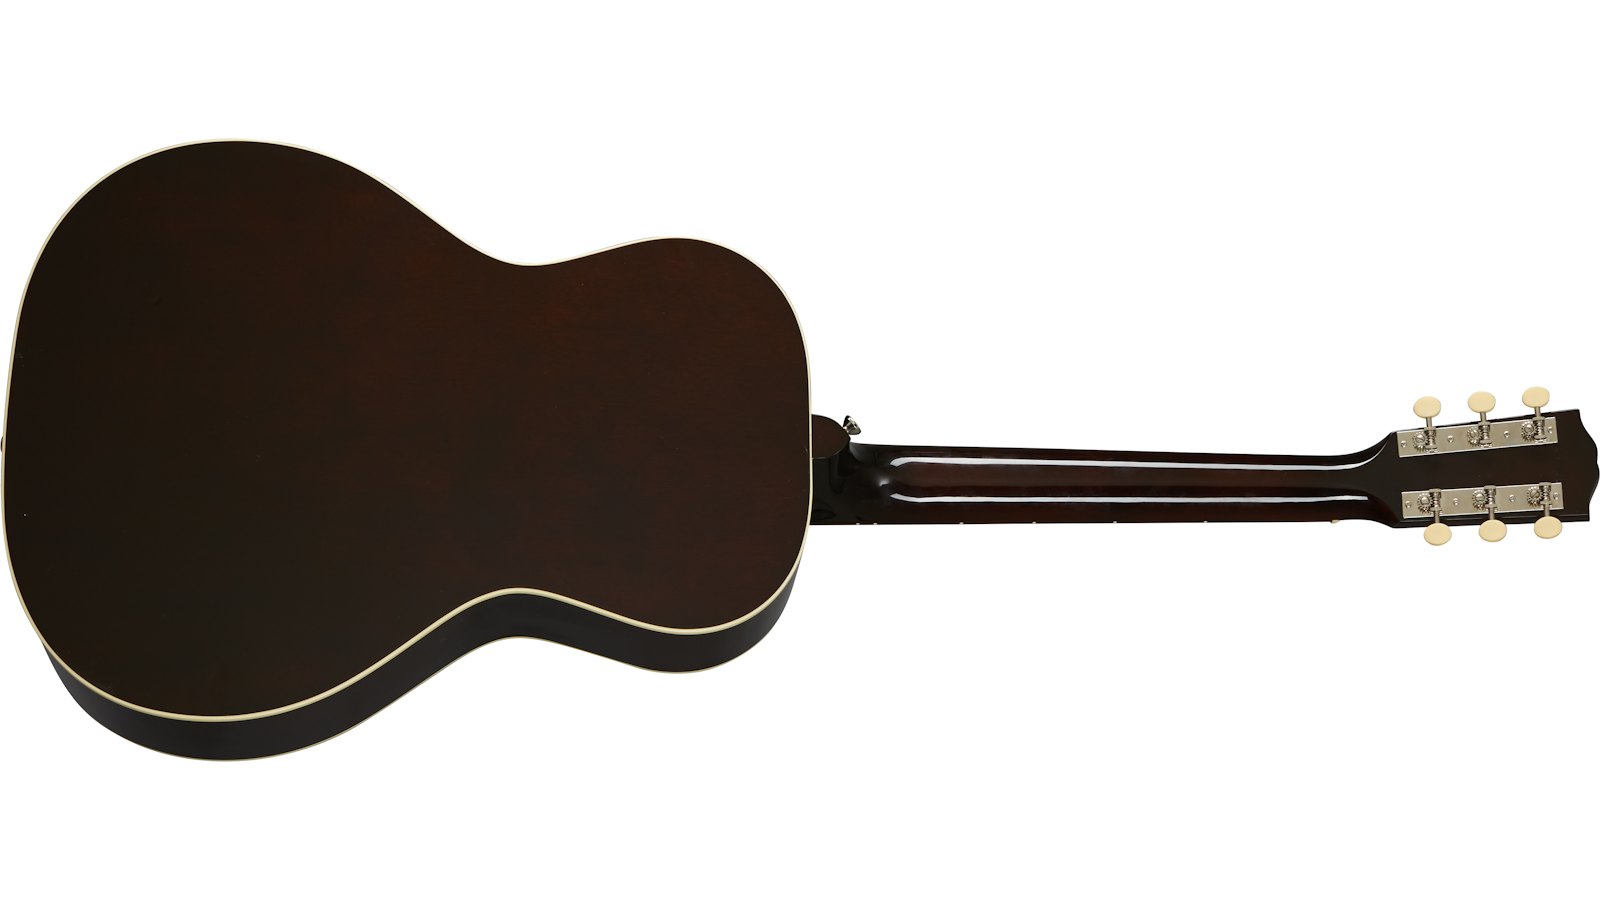 Gibson L-00 Original Lh 2020 Parlor Gaucher Epicea Acajou Rw - Vintage Sunburst - Elektro-akoestische gitaar - Variation 1